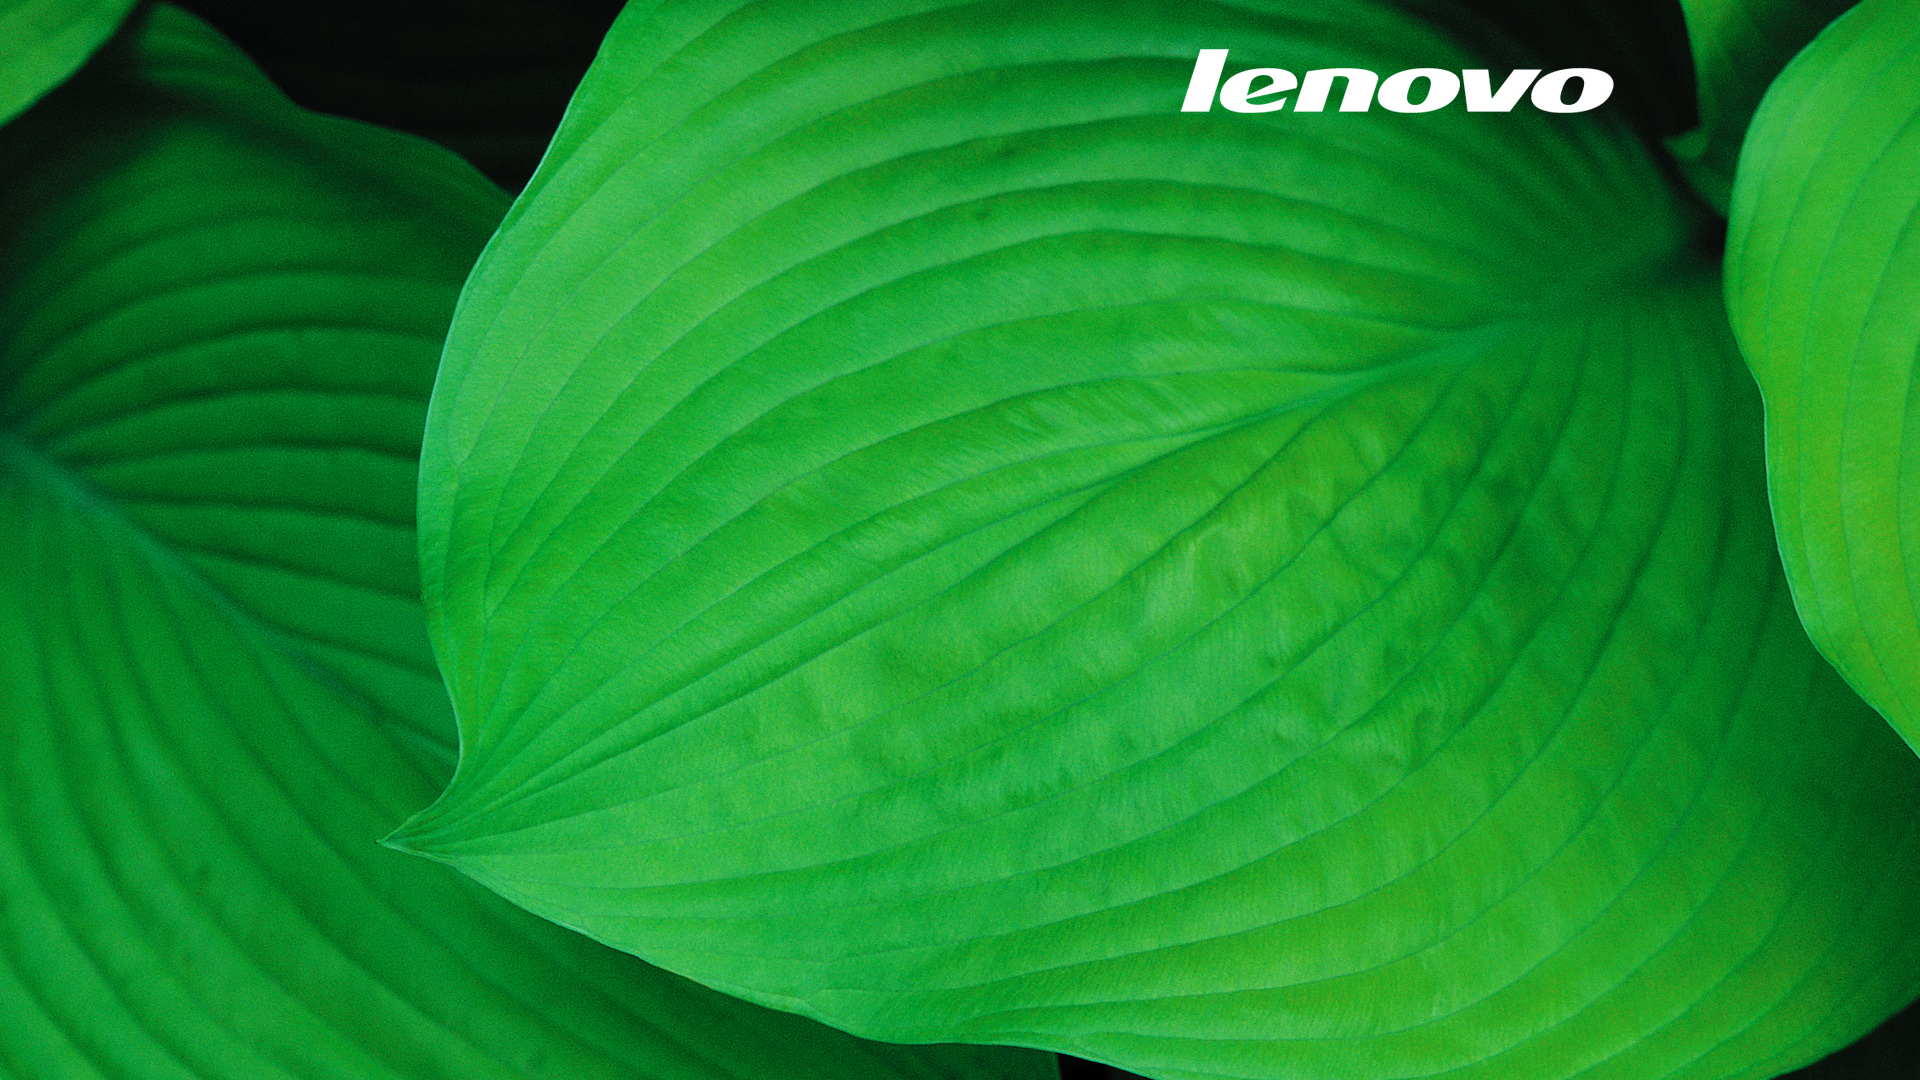 【一组高清绿色植物保护视力墙纸桌面壁纸】-【软件及服务】论坛-LenovoPC社区-联想社区